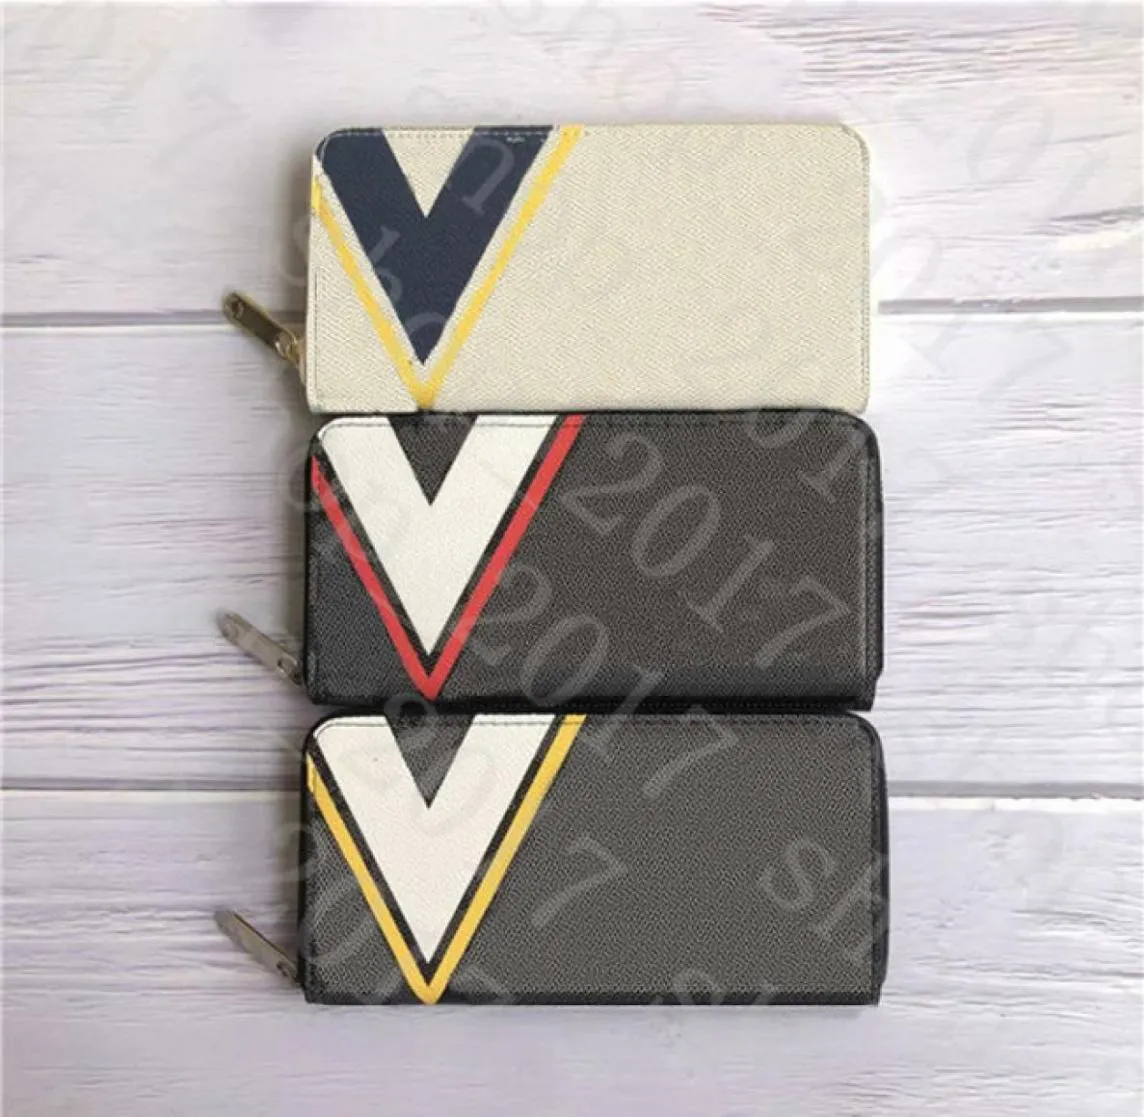 Yq Zippy Warlet Vertical Самый стильный способ носить с собой карты и монеты классический дизайн мужской кошелек держатель карт1259790